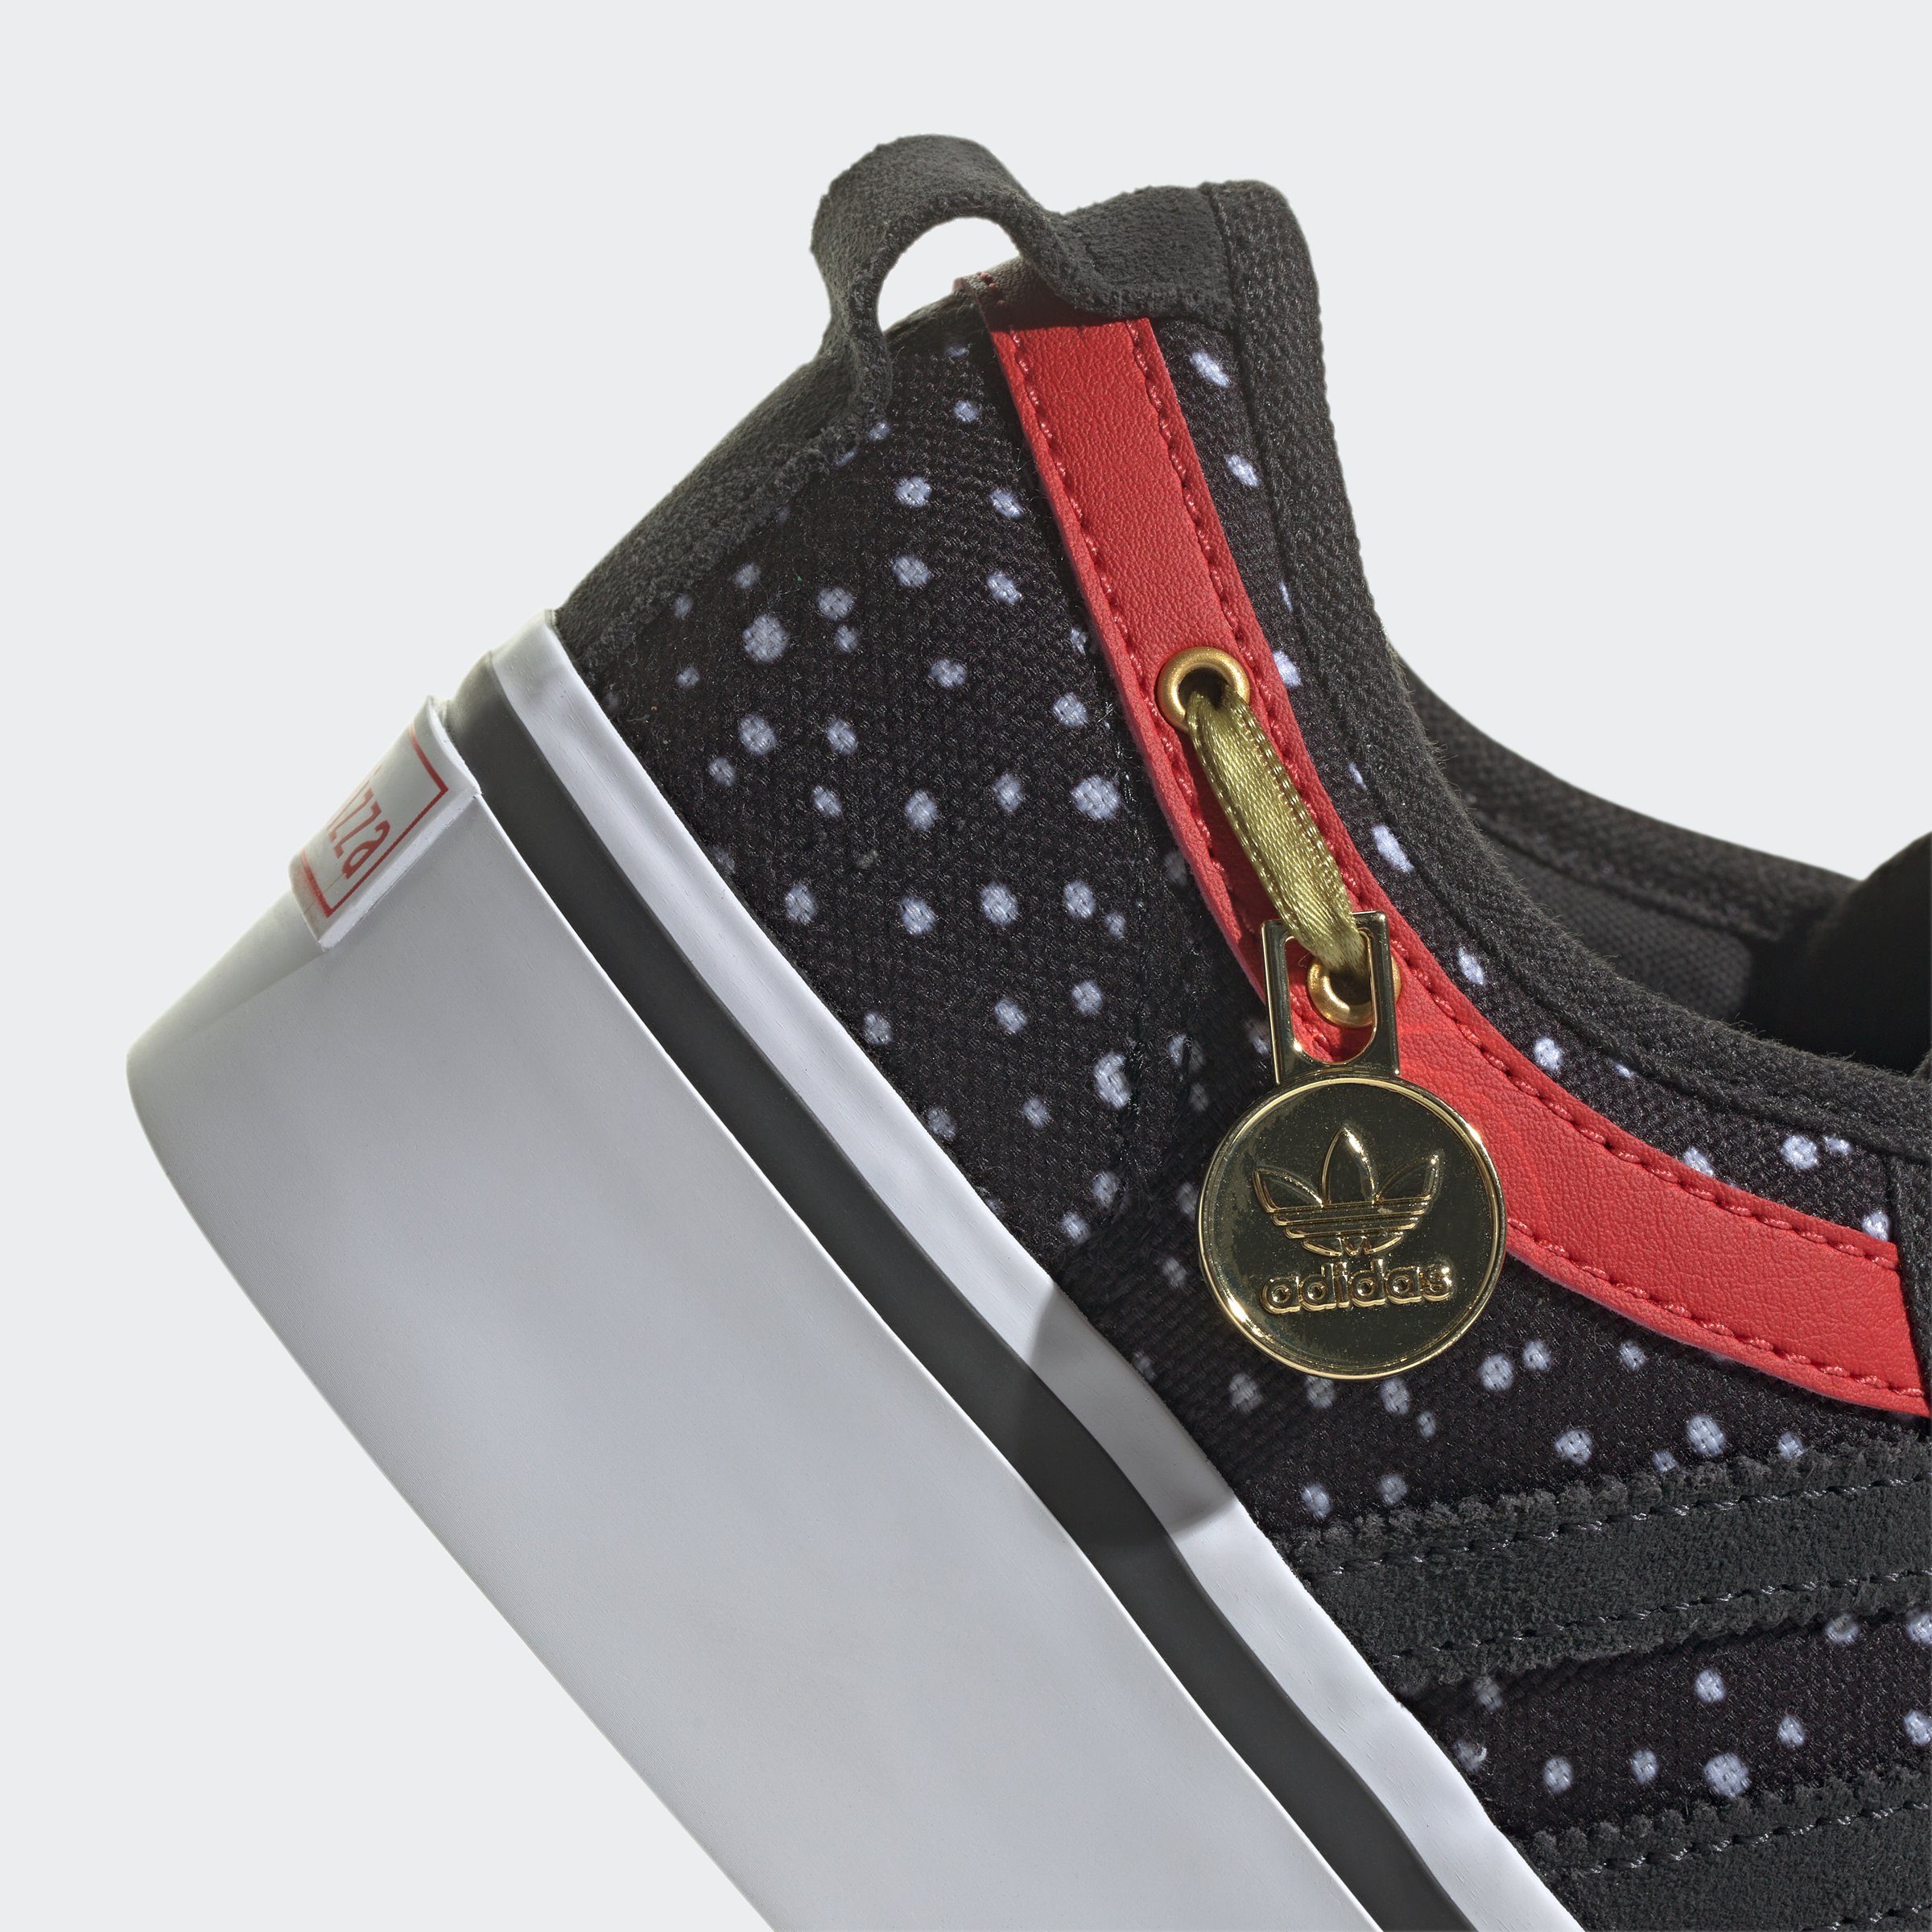 KIDS NIZZA Originals Sneaker PLATFORM DISNEY ADIDAS X 101 DALMATINER adidas ORIGINALS